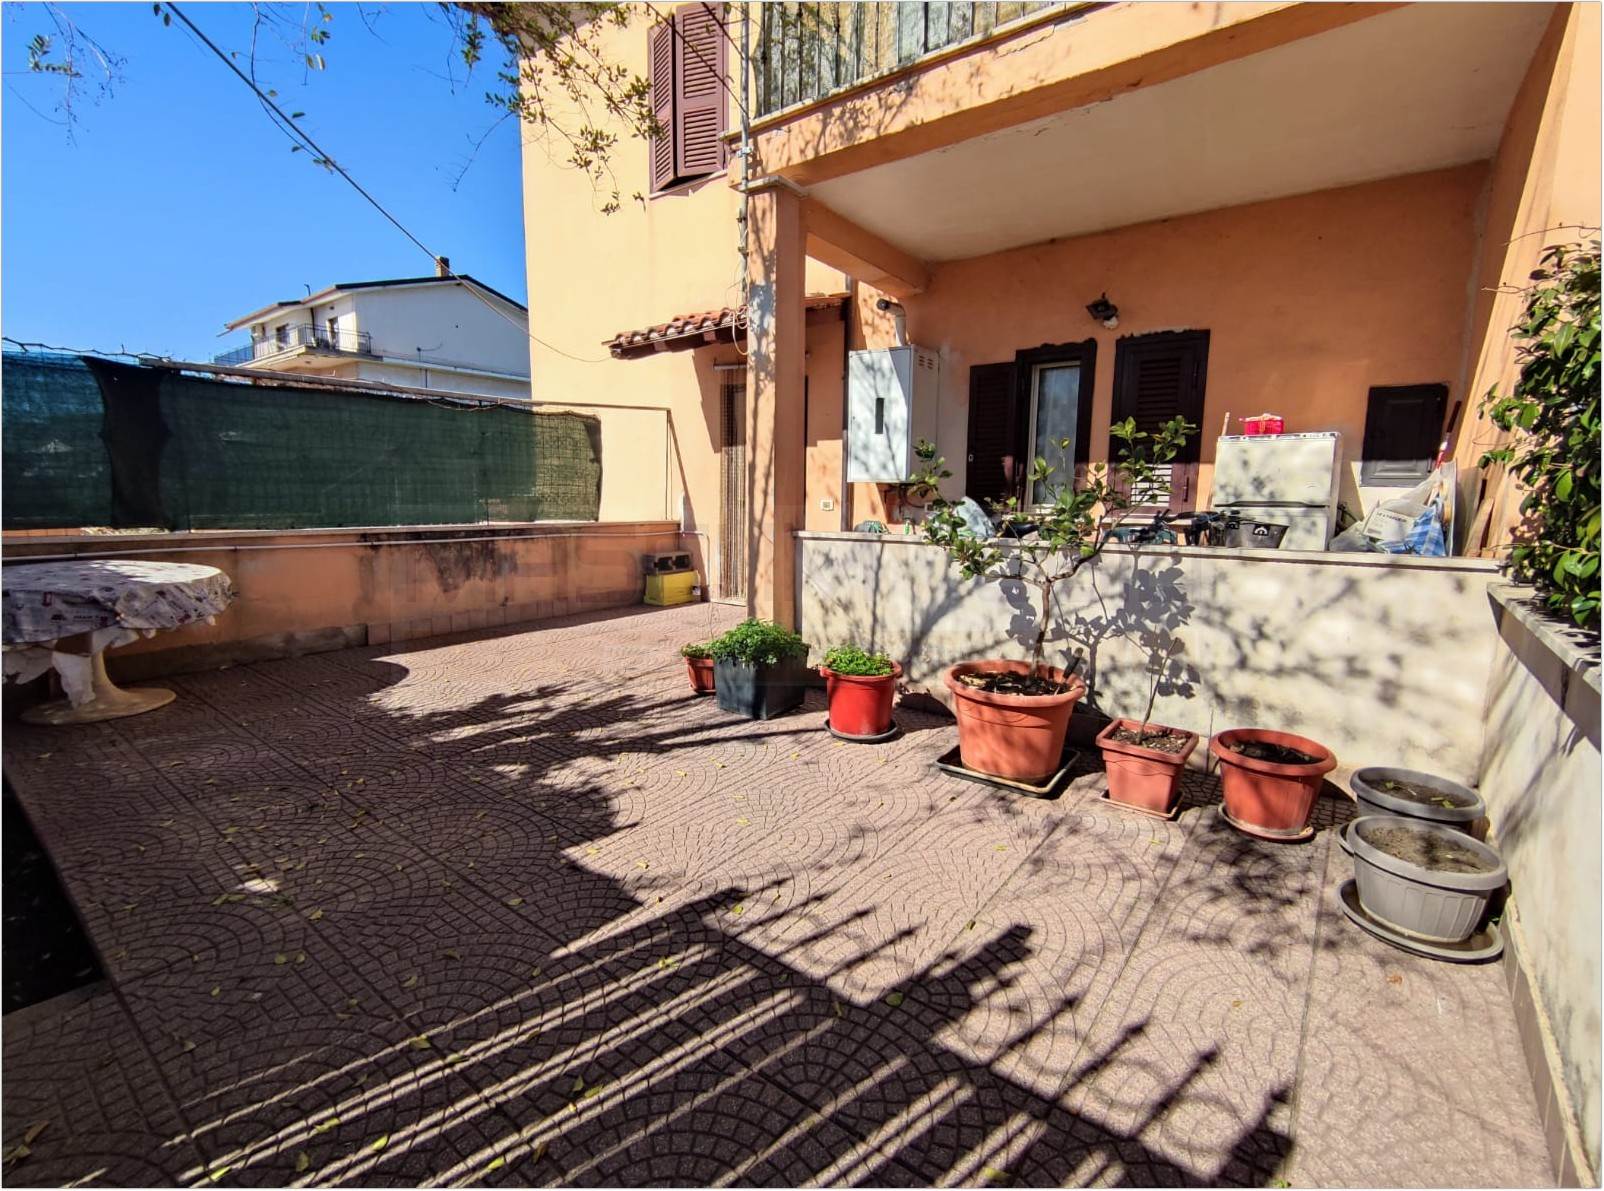 Appartamento in vendita a Fiano Romano, 3 locali, prezzo € 95.000 | PortaleAgenzieImmobiliari.it